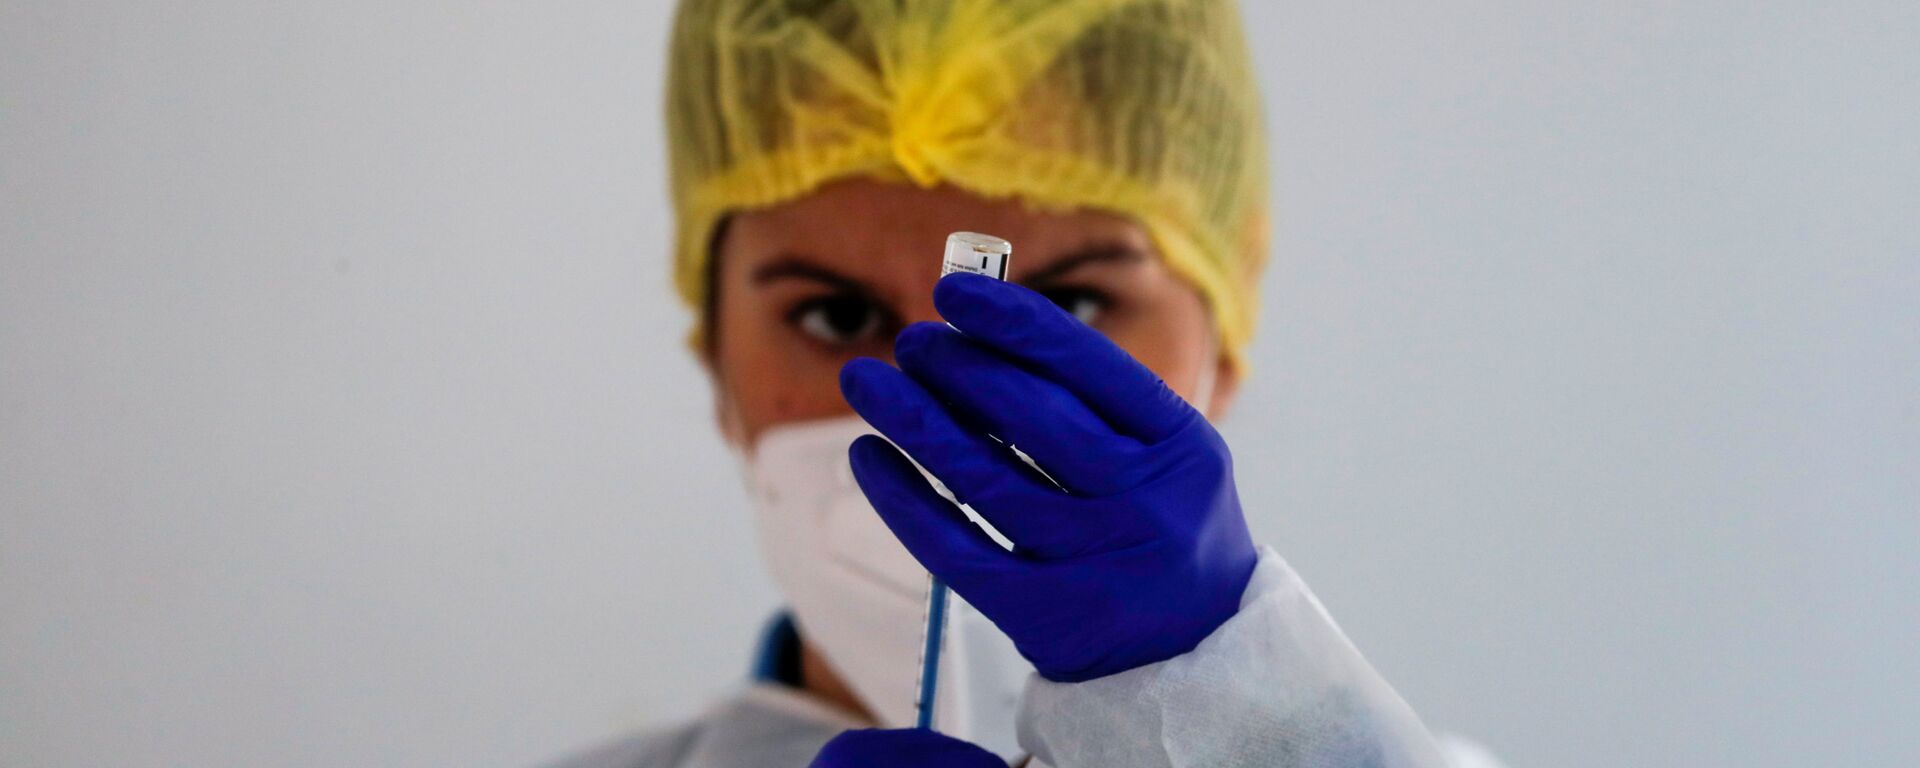 Медицинский работник готовит дозу вакцины Pfizer-BioNTech во время массовой вакцинации в Ронде, Испания - Sputnik Латвия, 1920, 10.03.2021